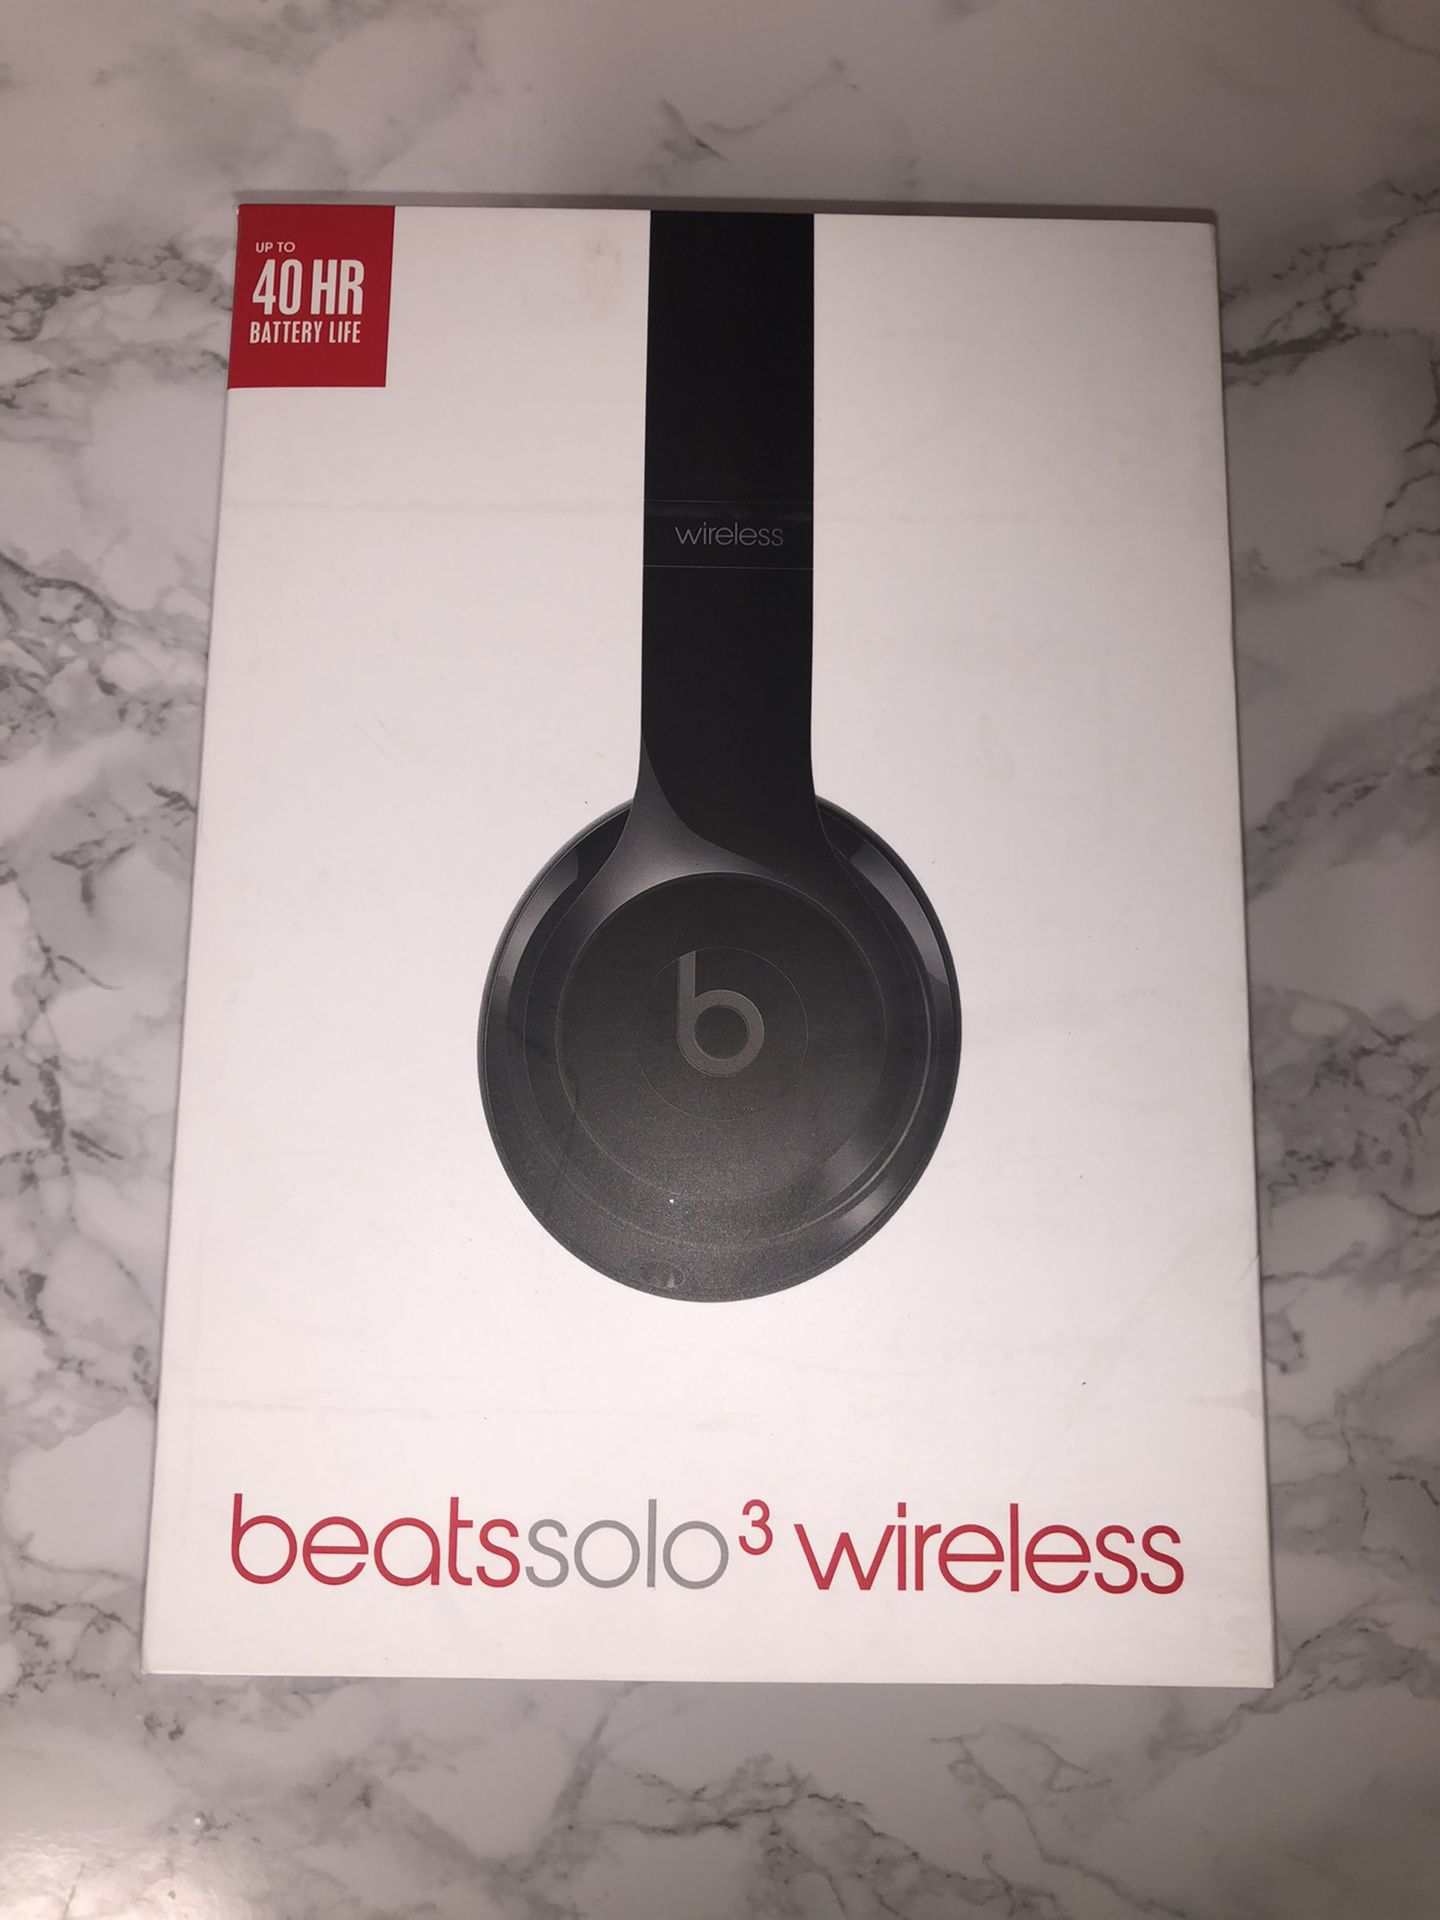 Beats solo3 wireless